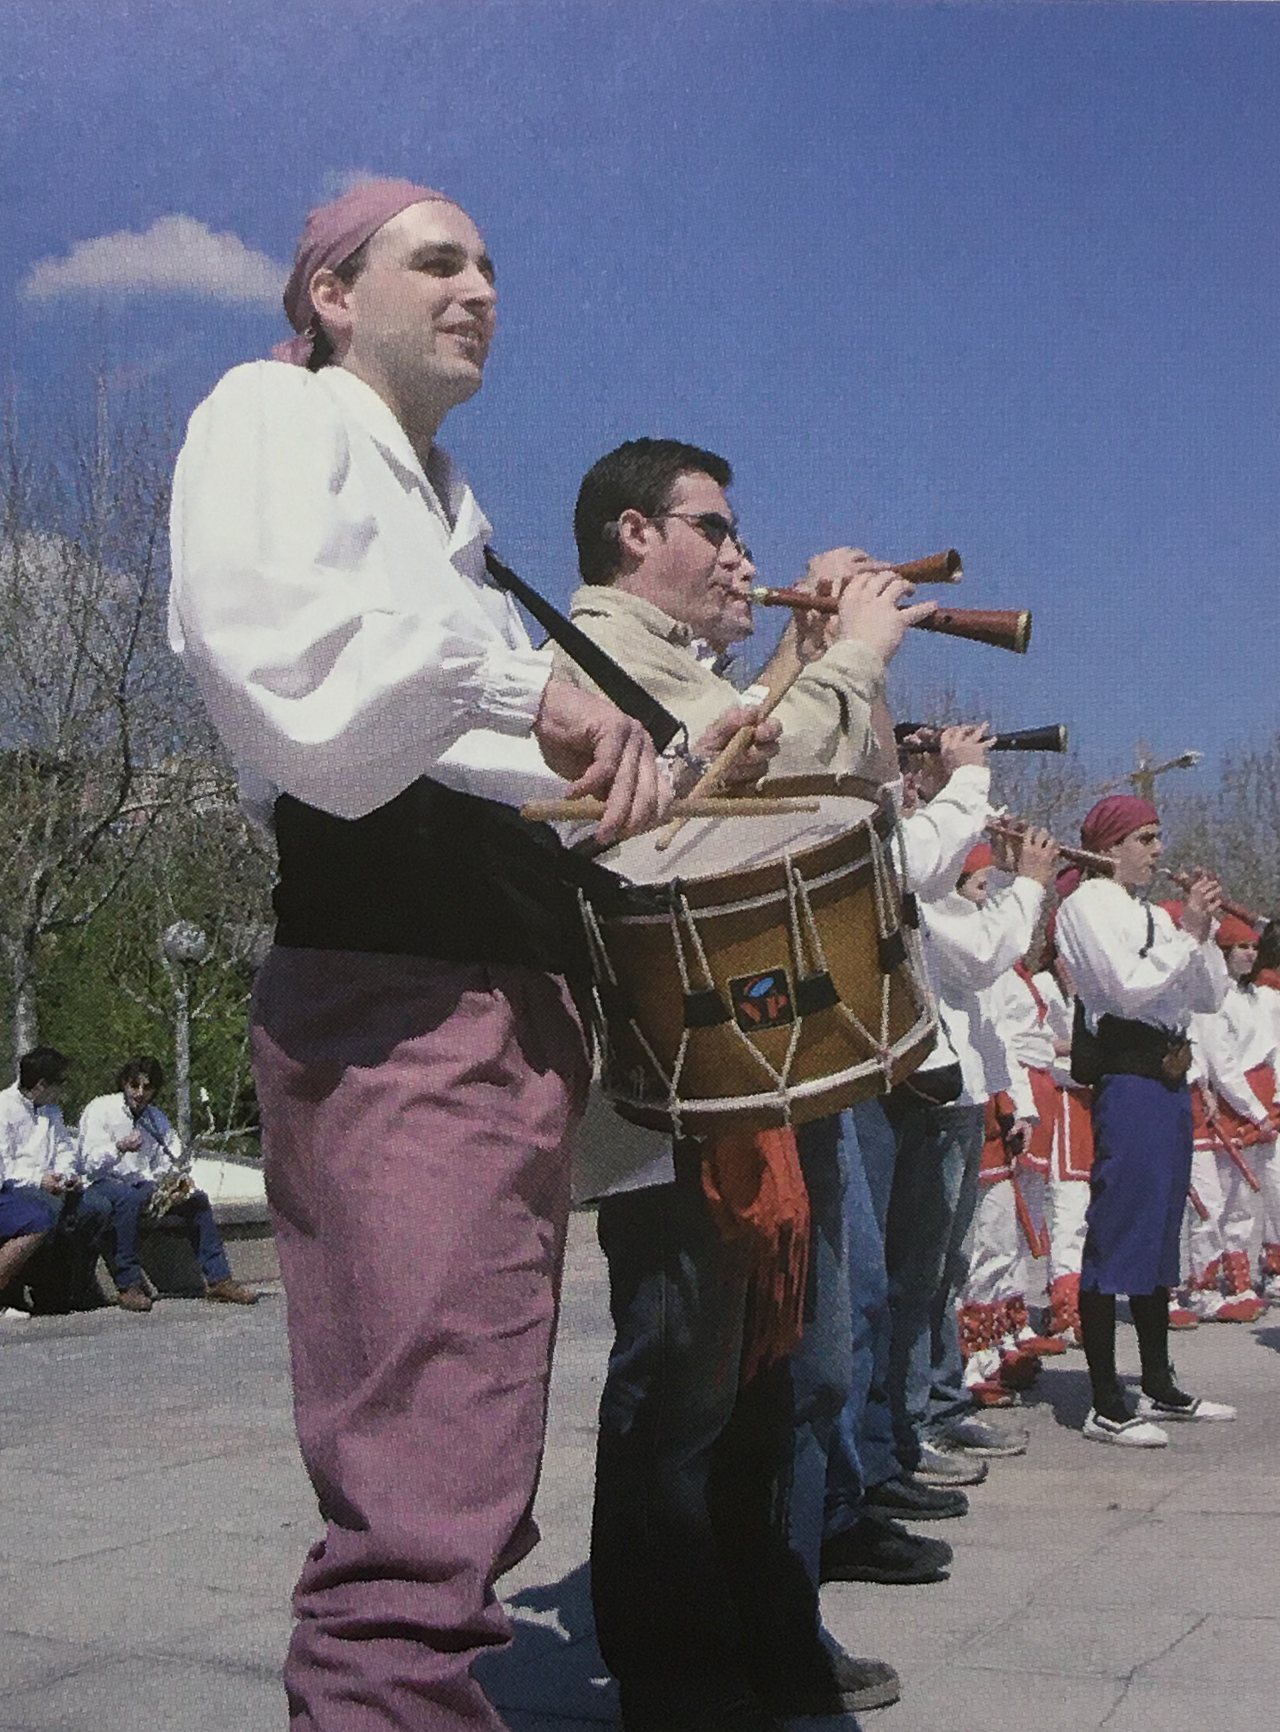 Any 2004 - Acompanyament musical de la colla caramellaire de l'AgrupaciÃ³ Sardanista (font: llibre 'Les Caramelles de SÃºria' de NÃºria Balaguer i Riera).